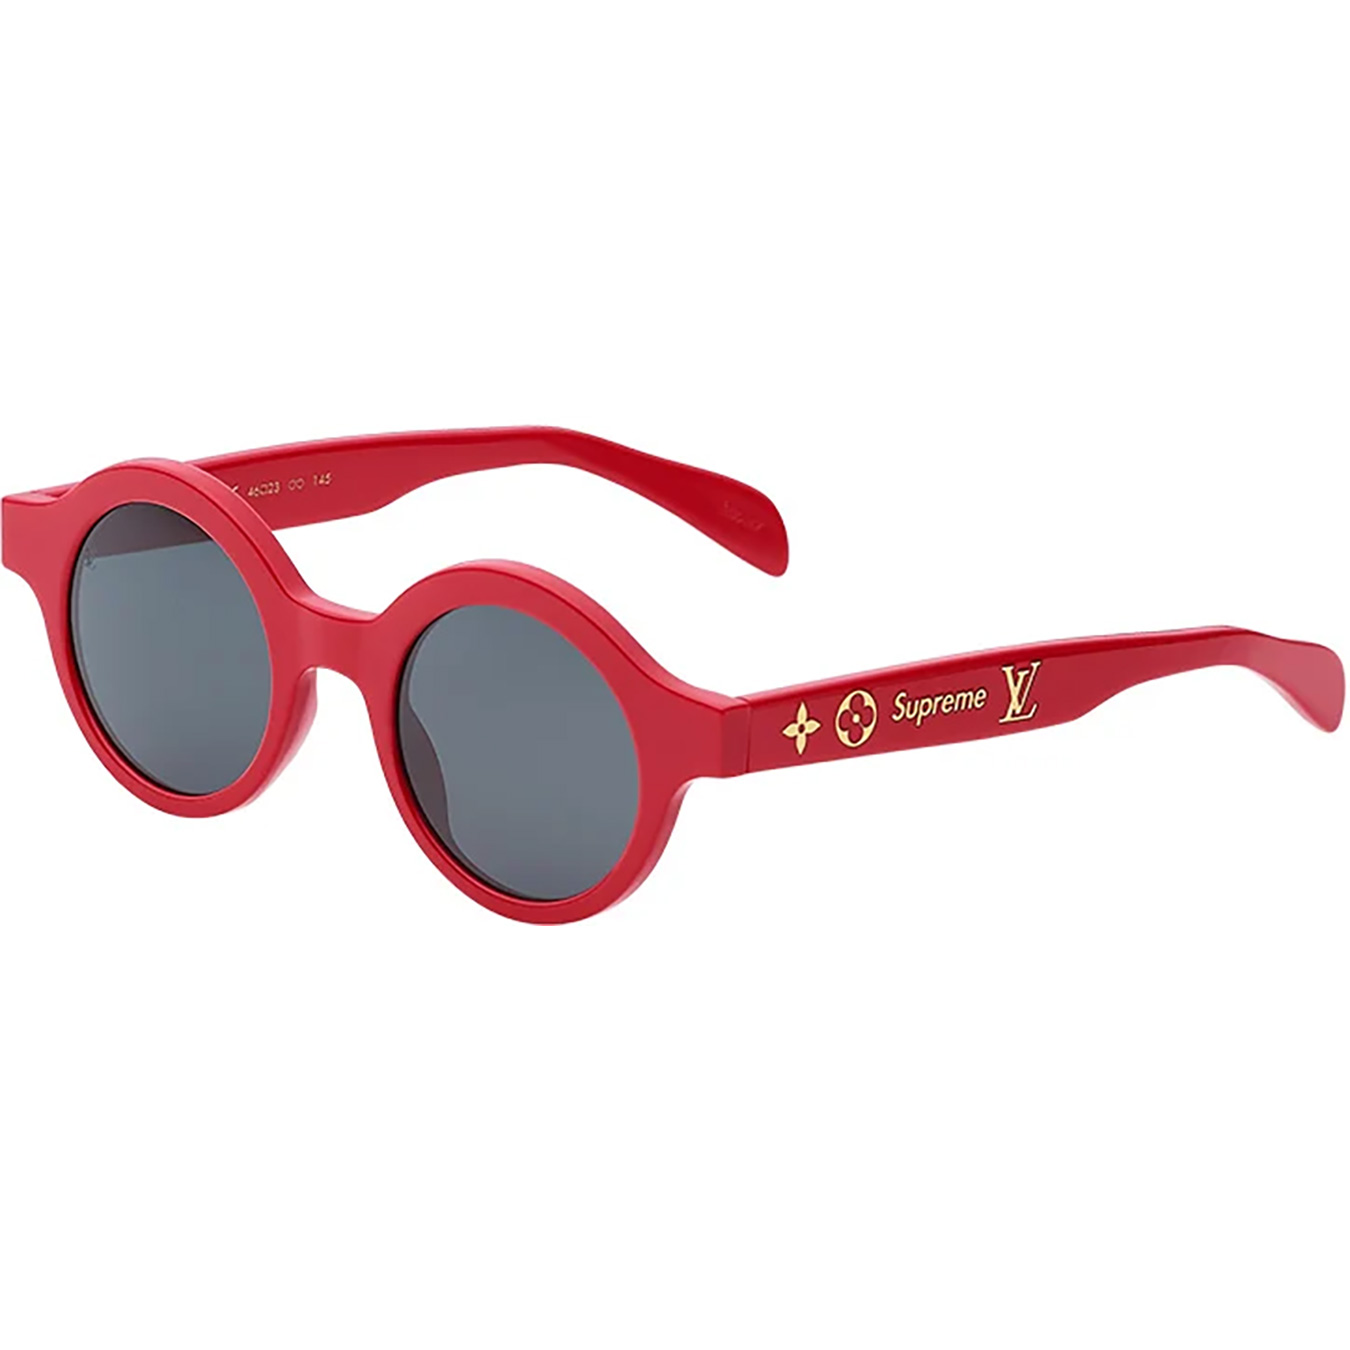 Louis Vuitton/Supreme Downtown Sunglasses